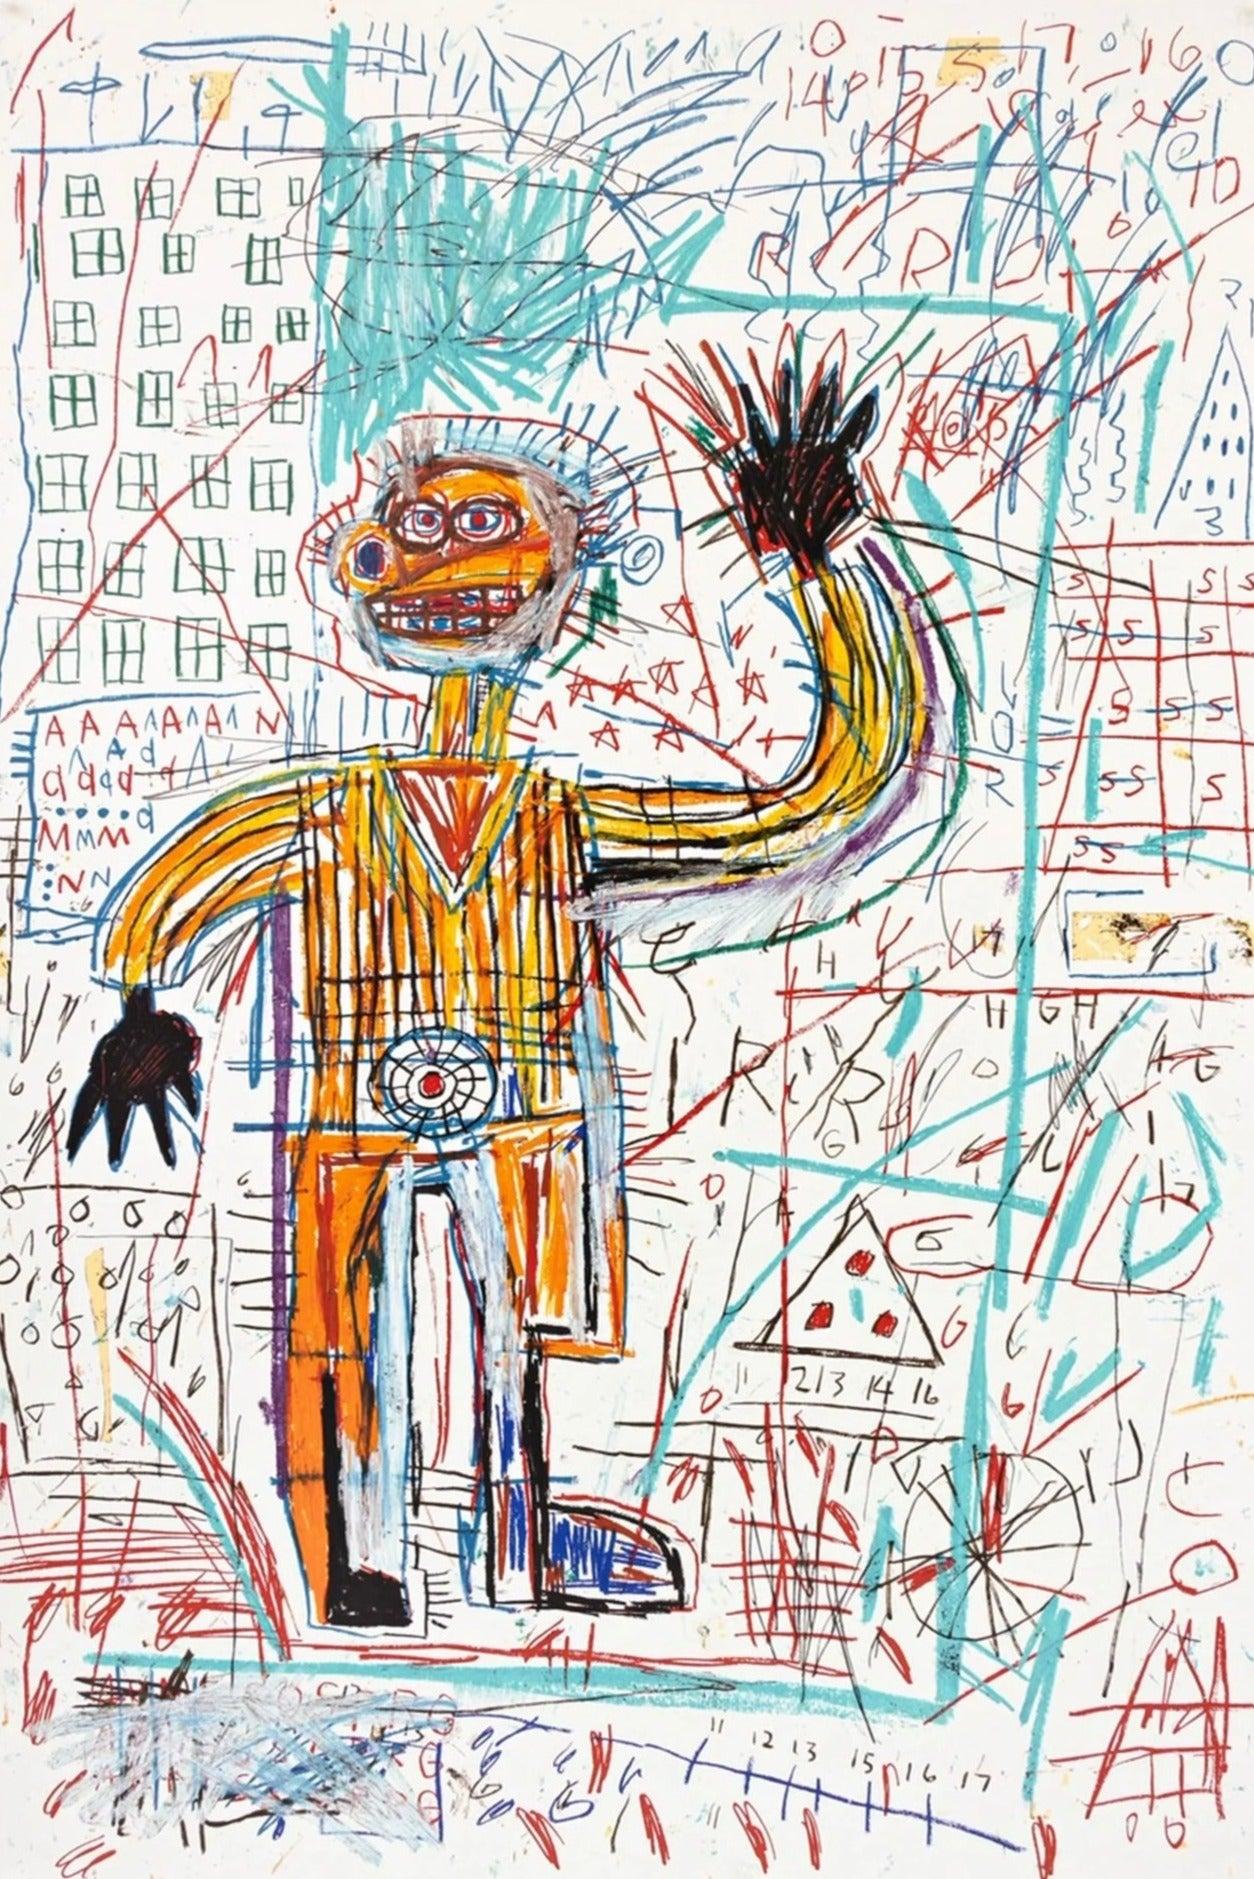 Künstler: Jean-Michel Basquiat (nach)
Titel: Unbenannt
Portfolio: 1982/2023 Das Figurenportfolio
Medium: Handgezogener Siebdruck
Jahr: 2023
Auflage: 79/85
Rahmen Größe: 55 3/4" x 39 3/4"
Blattgröße: 48" x 32"
Signatur: Verso gestempelt und signiert